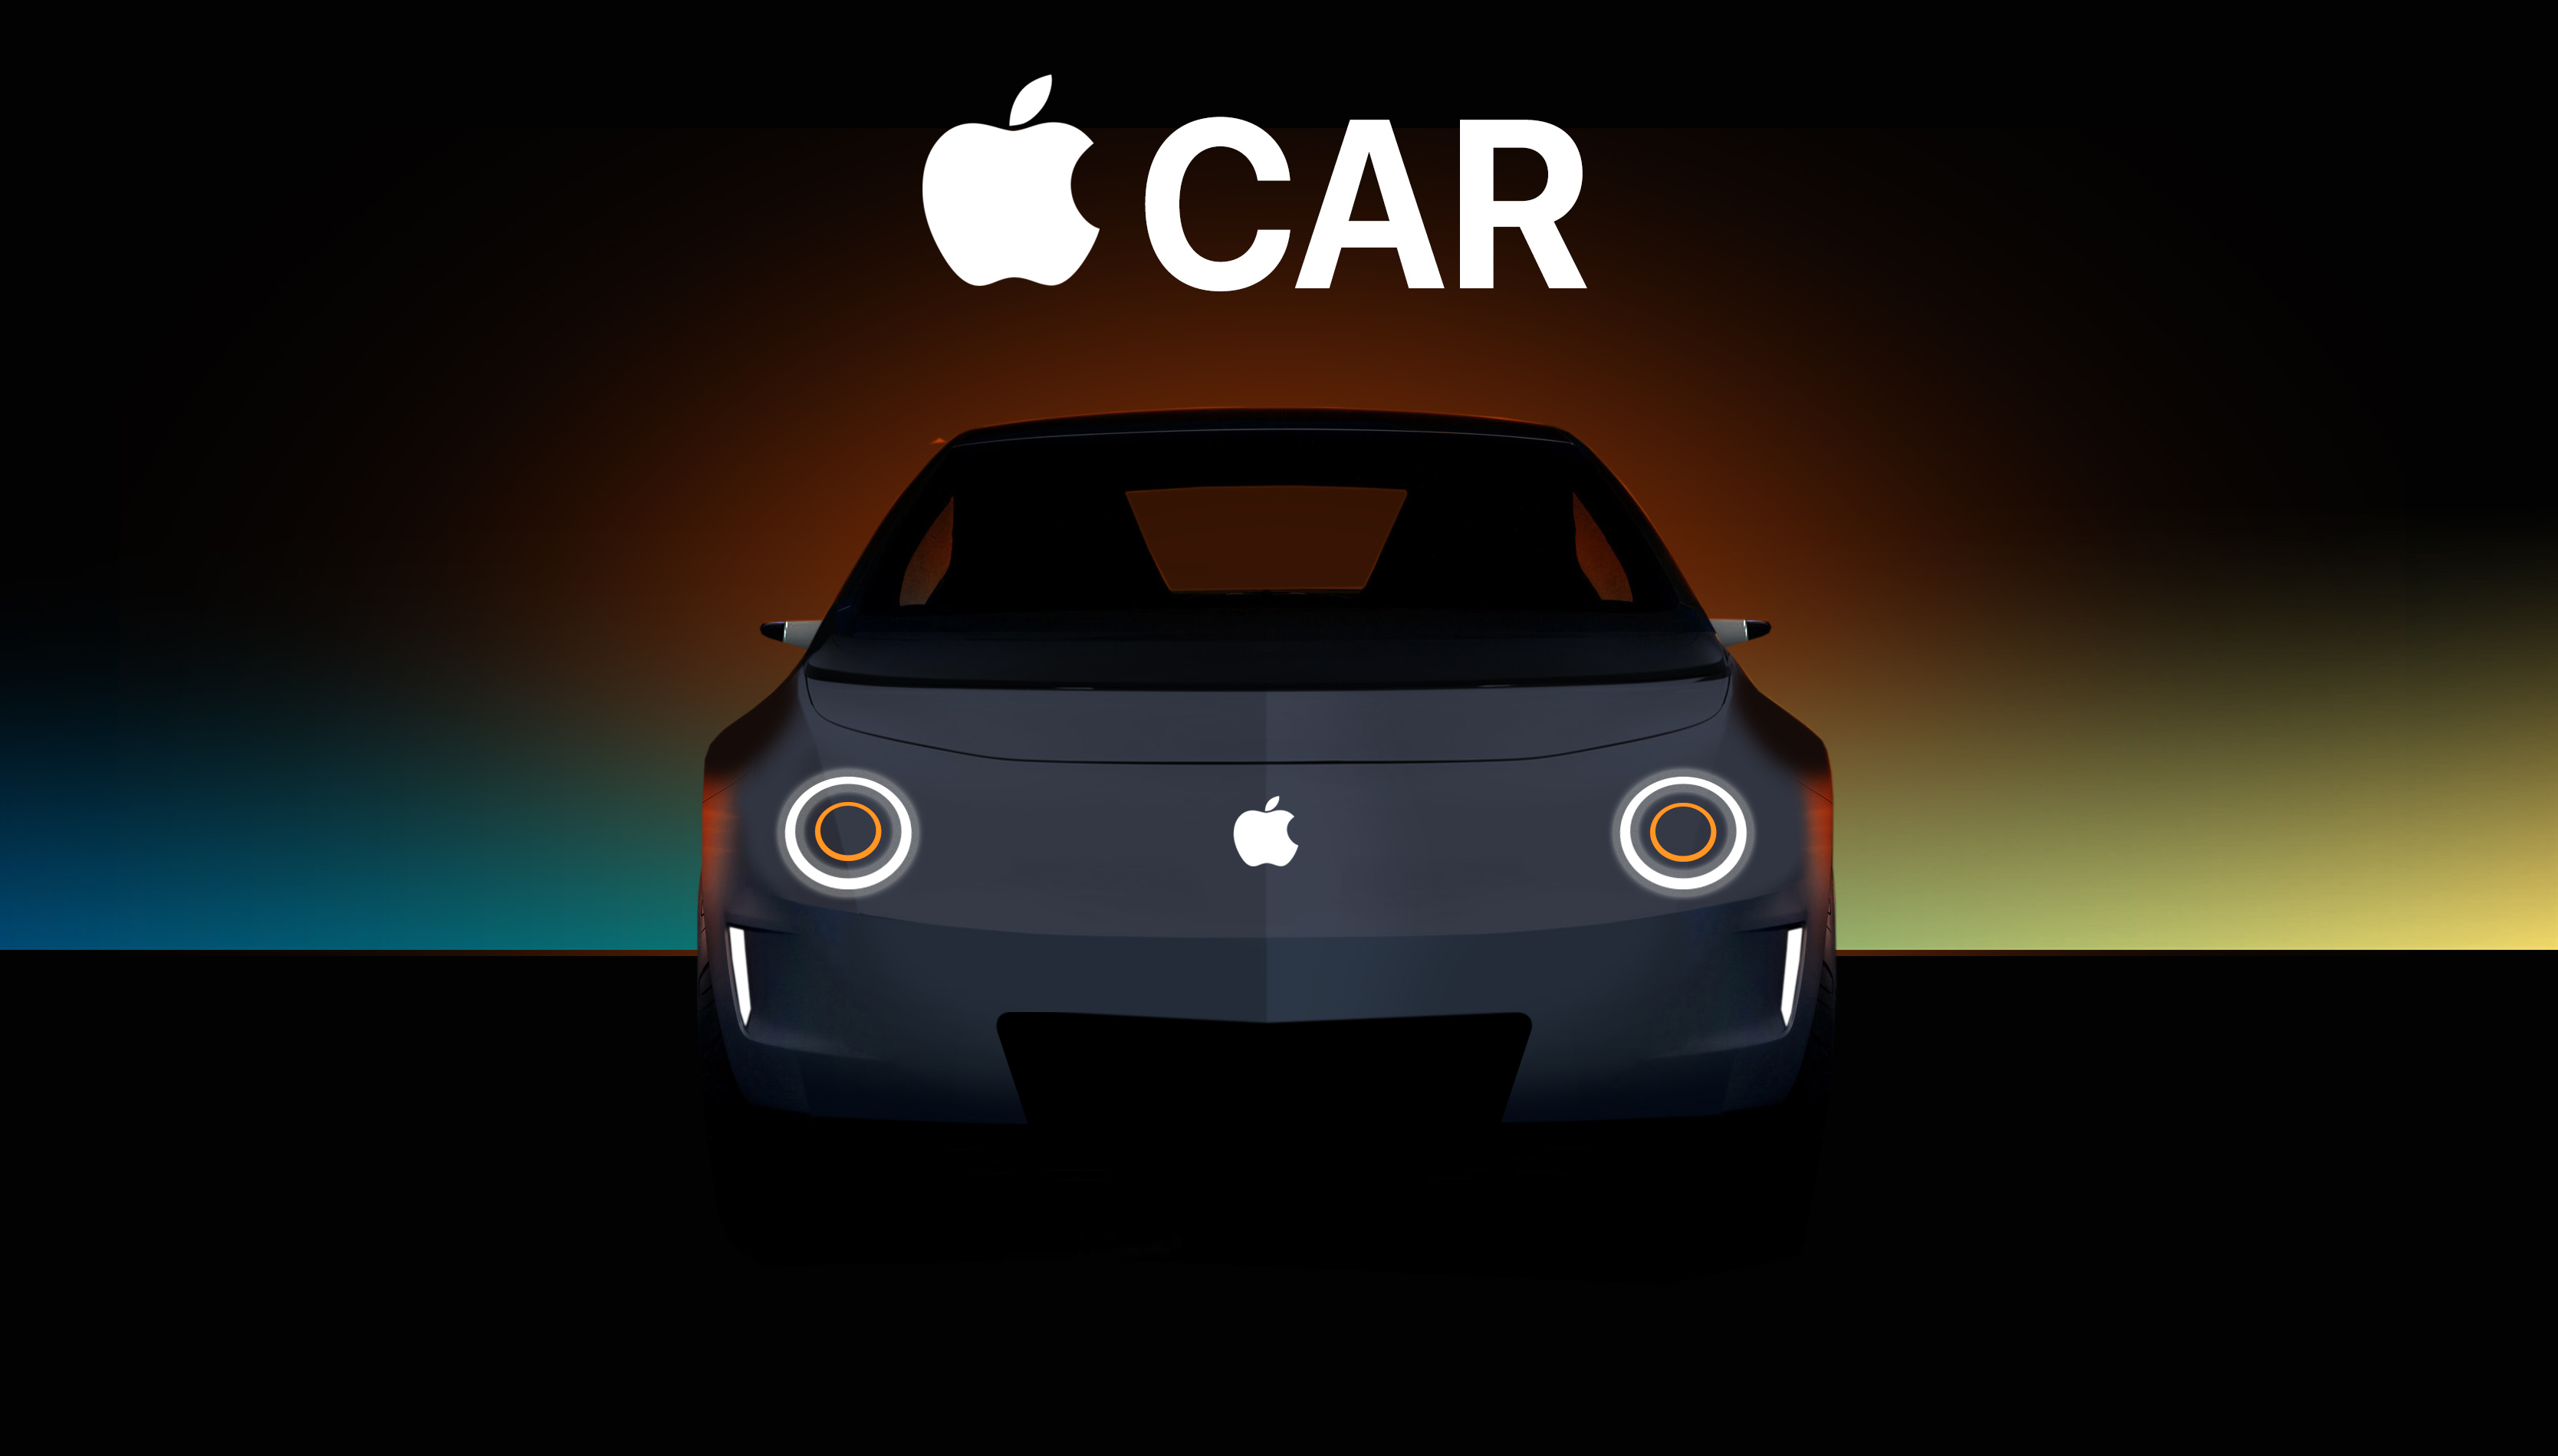 Apple car en pruebas pero sin fecha de lanzamiento